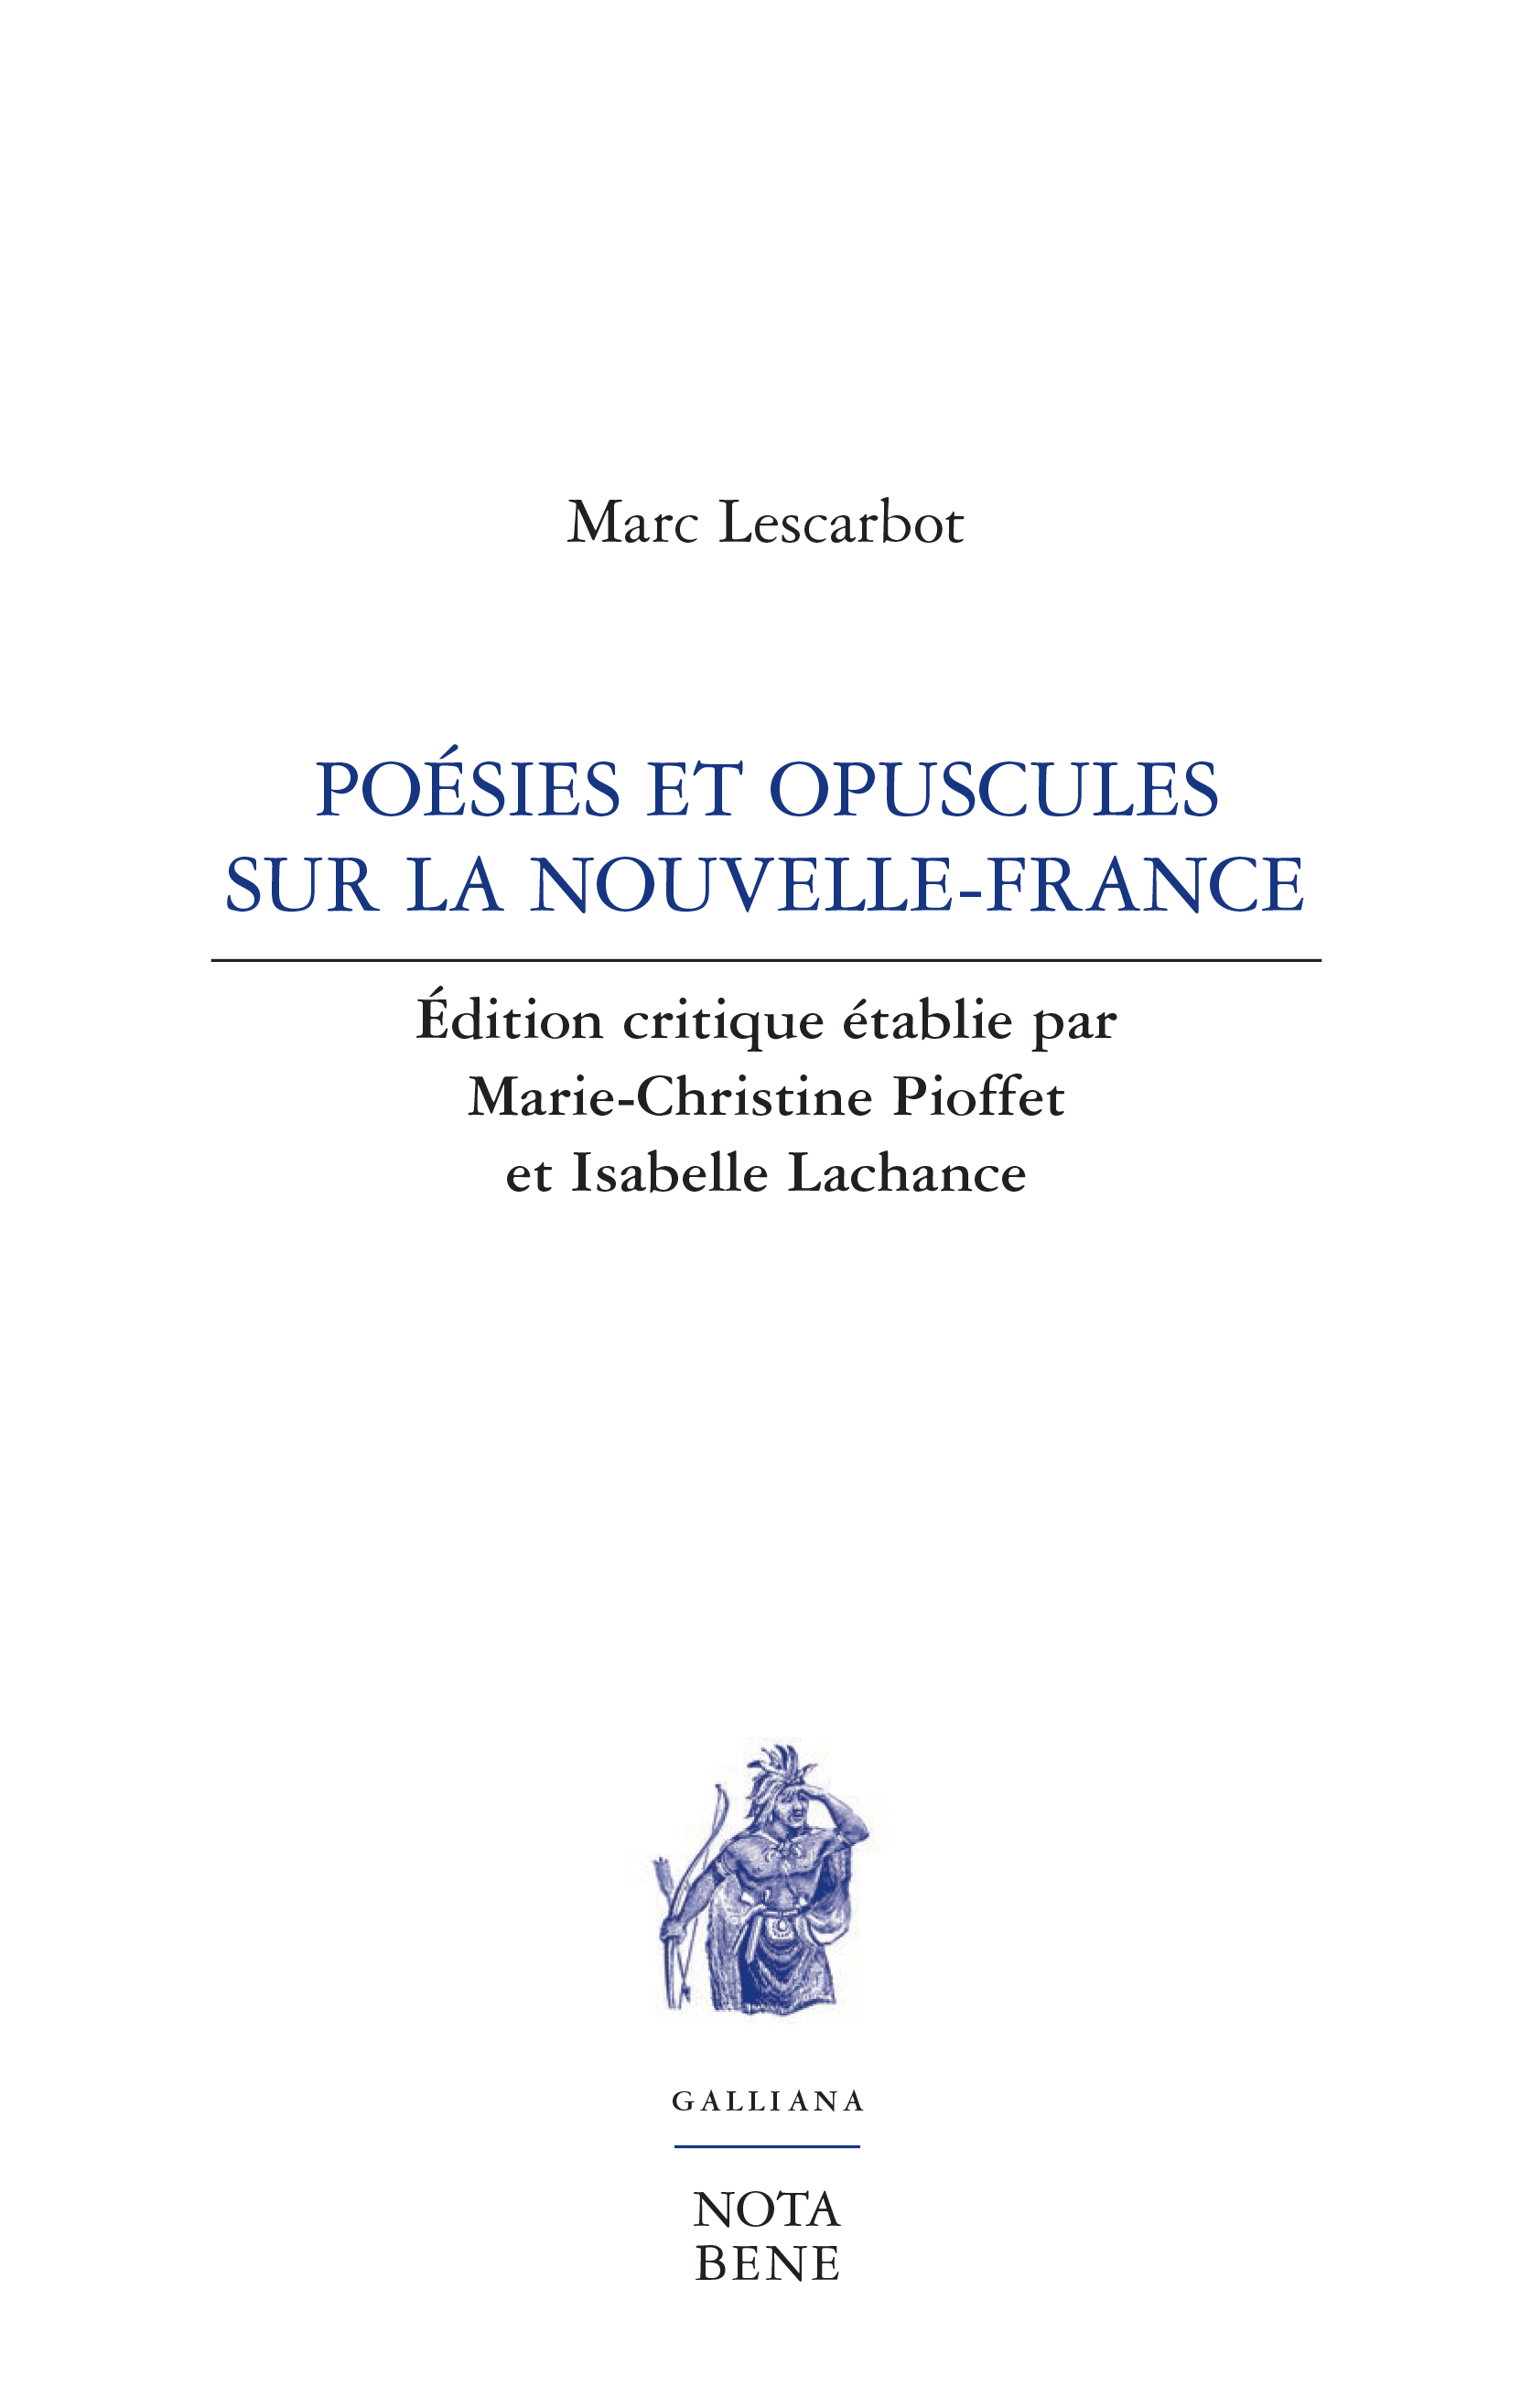 Marc Lescarbot, Poésies et opuscules sur la Nouvelle-France, édition critique établie par Marie-Christine Pioffet et Isabelle Lachance